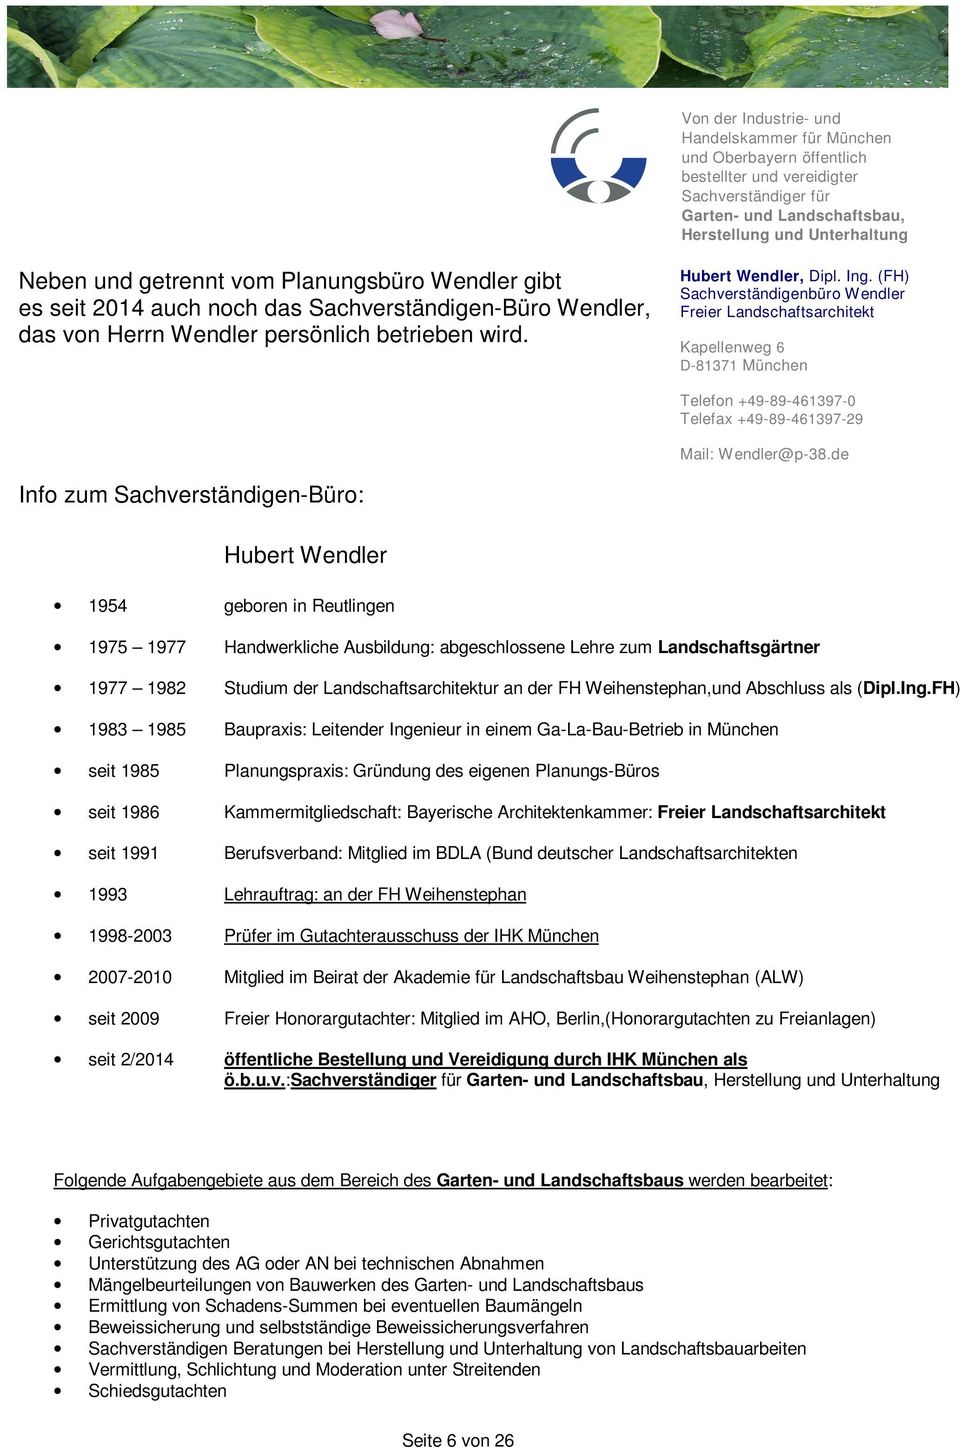 (FH) Sachverständigenbüro Wendler Freier Landschaftsarchitekt Kapellenweg 6 D-81371 München Telefon +49-89-461397-0 Telefax +49-89-461397-29 Mail: Wendler@p-38.